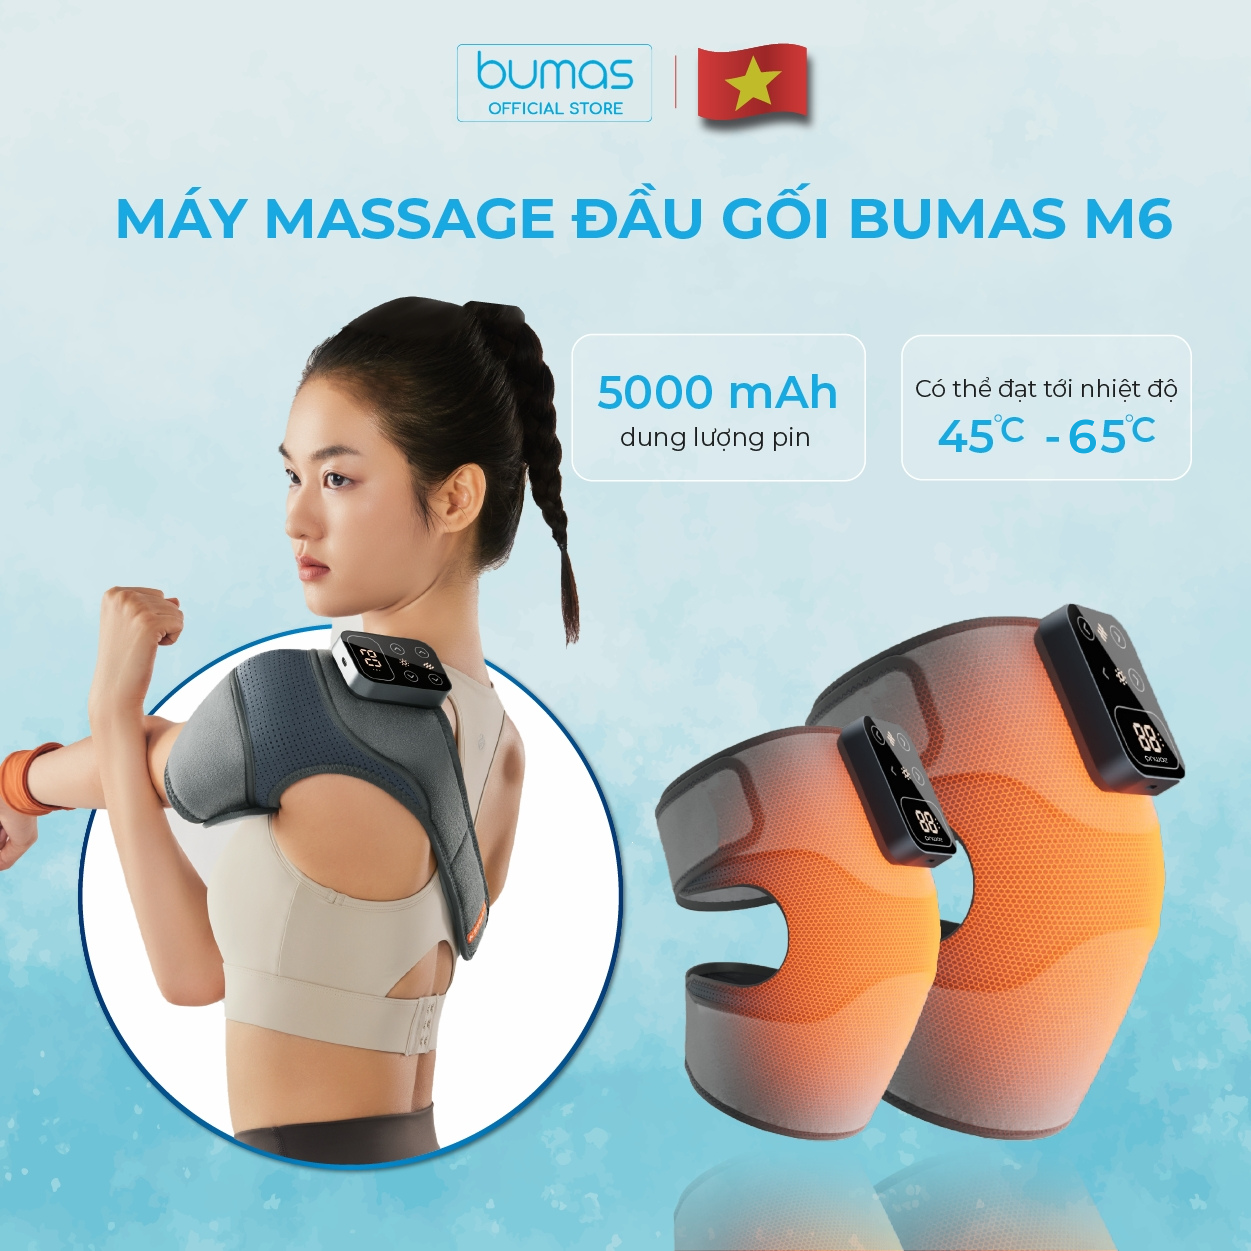 Máy Massage Đầu Gối BUMAS M6 – Chườm Nóng Hồng Ngoại 5 Cấp Độ - Massage Rung Vi Mô Tần Số Kép Đầu Gối, Vai, Khuỷu Tay - Hàng Chính Hãng